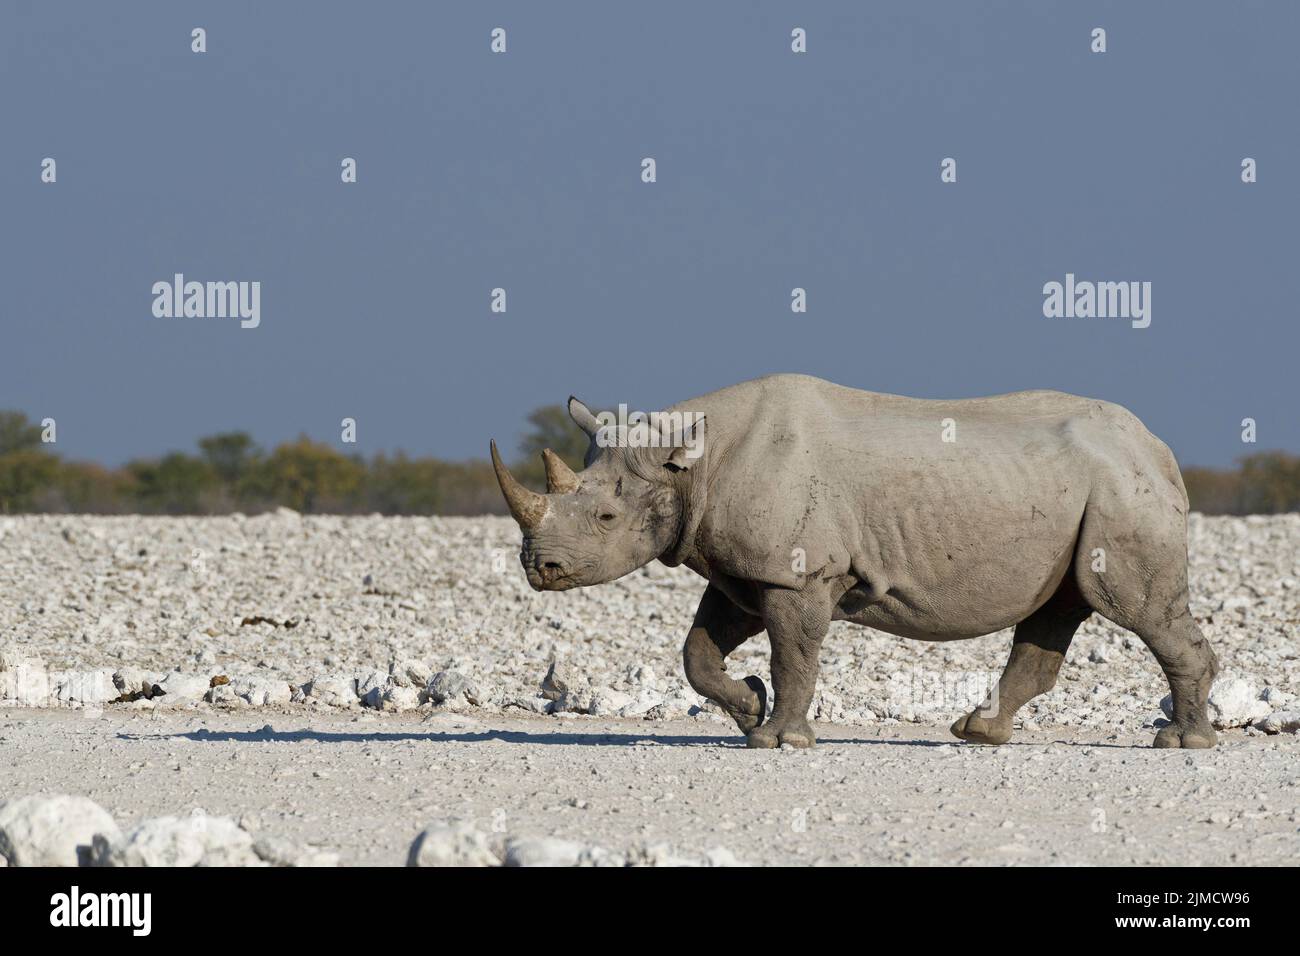 Black rhinoceros (Diceros bicornis), adult on arid ground, walking towards waterhole, Etosha National Park, Namibia, Africa Stock Photo